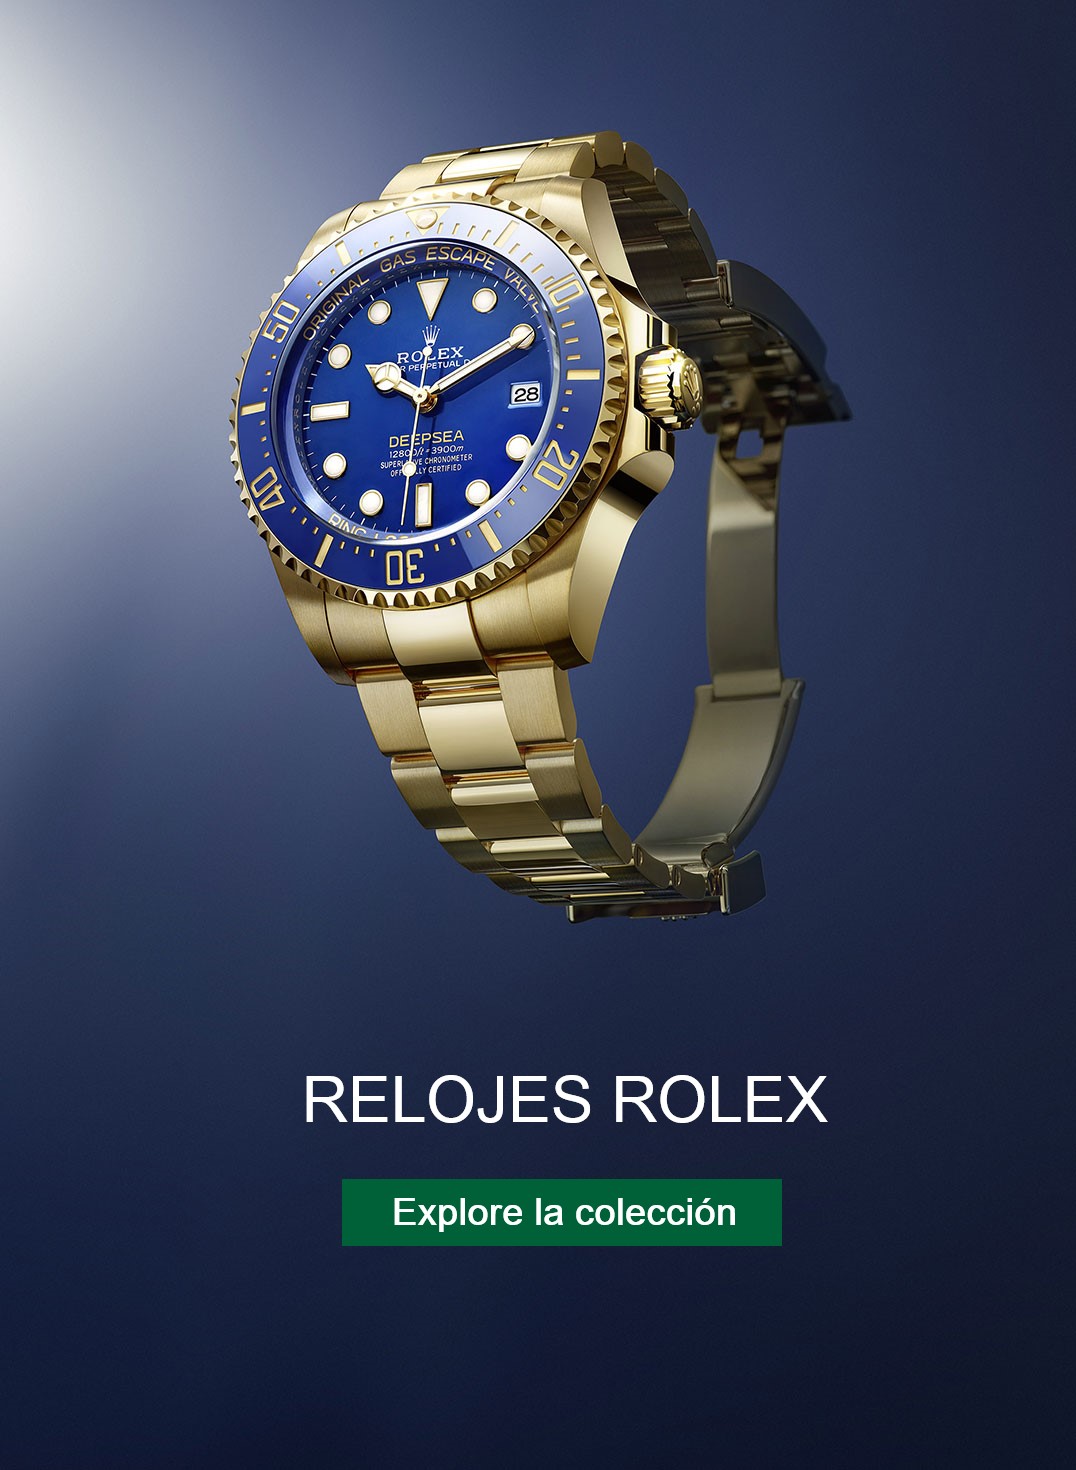 Reloj Rolex DeepSea  en el oceano